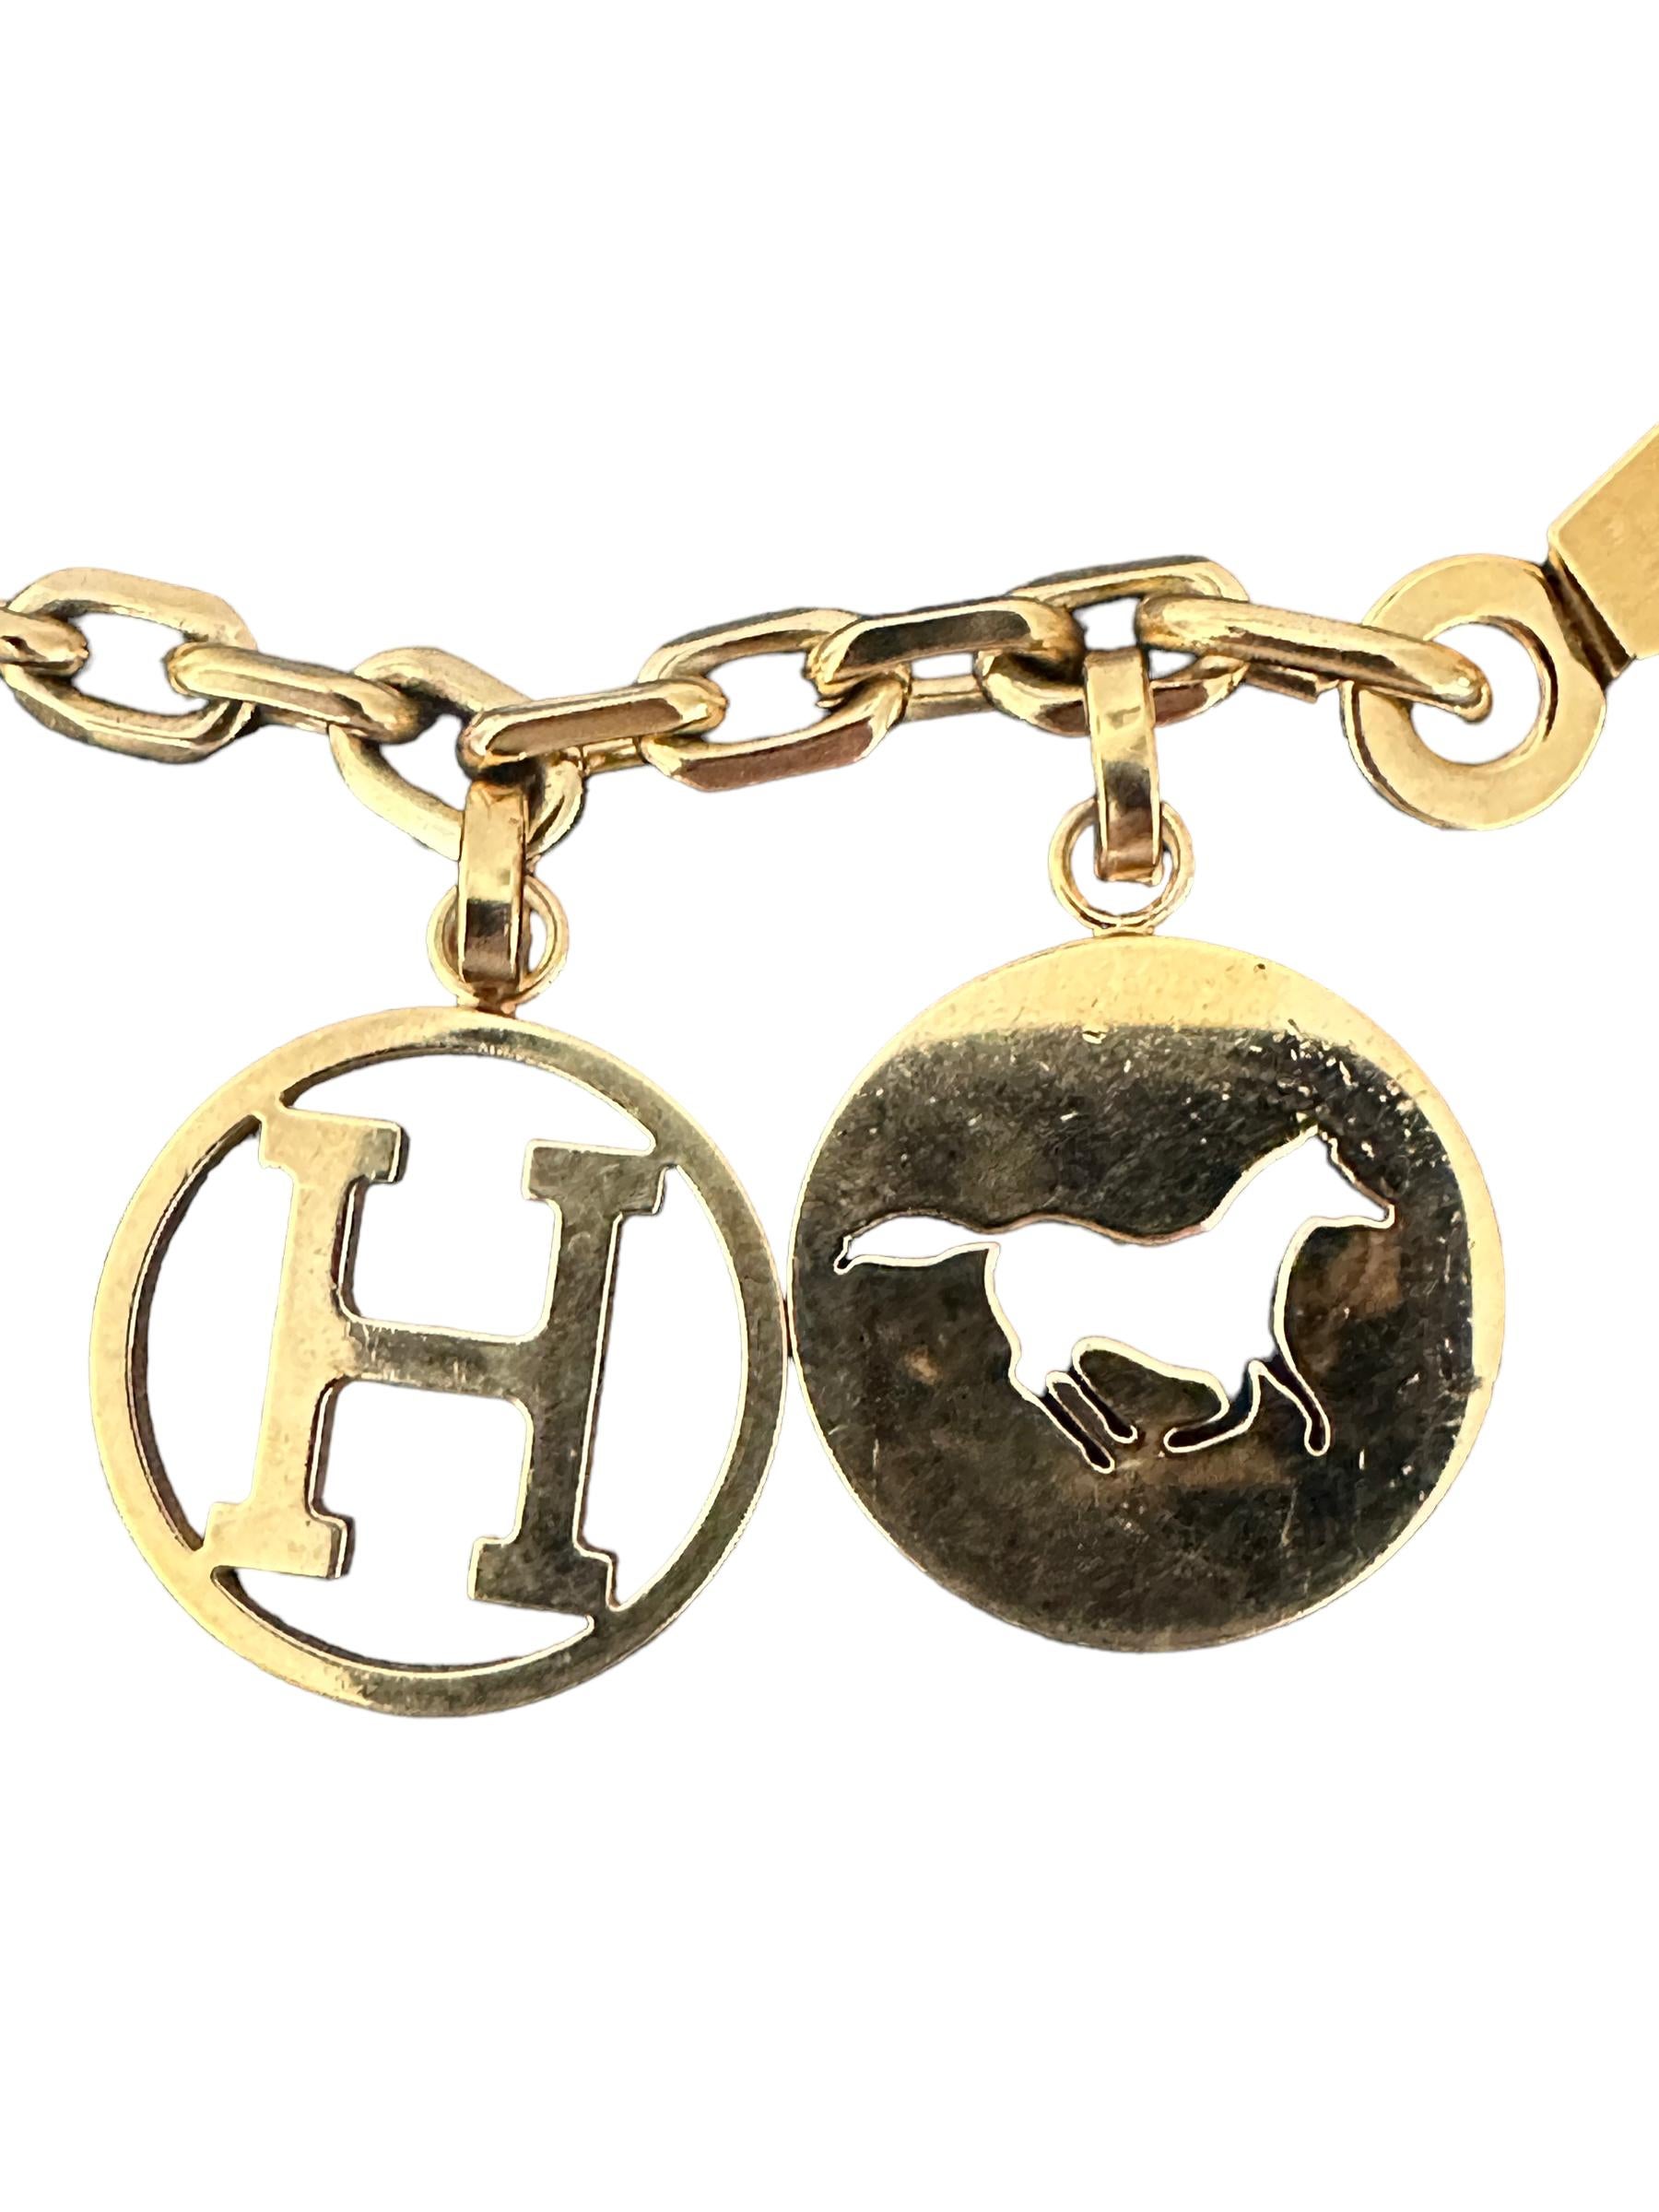 Hermes Gold Breloque Hund Pferd H  Taschen-Charme für Birkin oder Kelly

Schon lange nicht mehr erhältlicher, ikonischer silberner Taschen-Charme von Hermes.
Passt wunderbar zu Ihrer Kelly oder Birkin
Machen Sie Ihre Tasche zum Hingucker!
Dieser